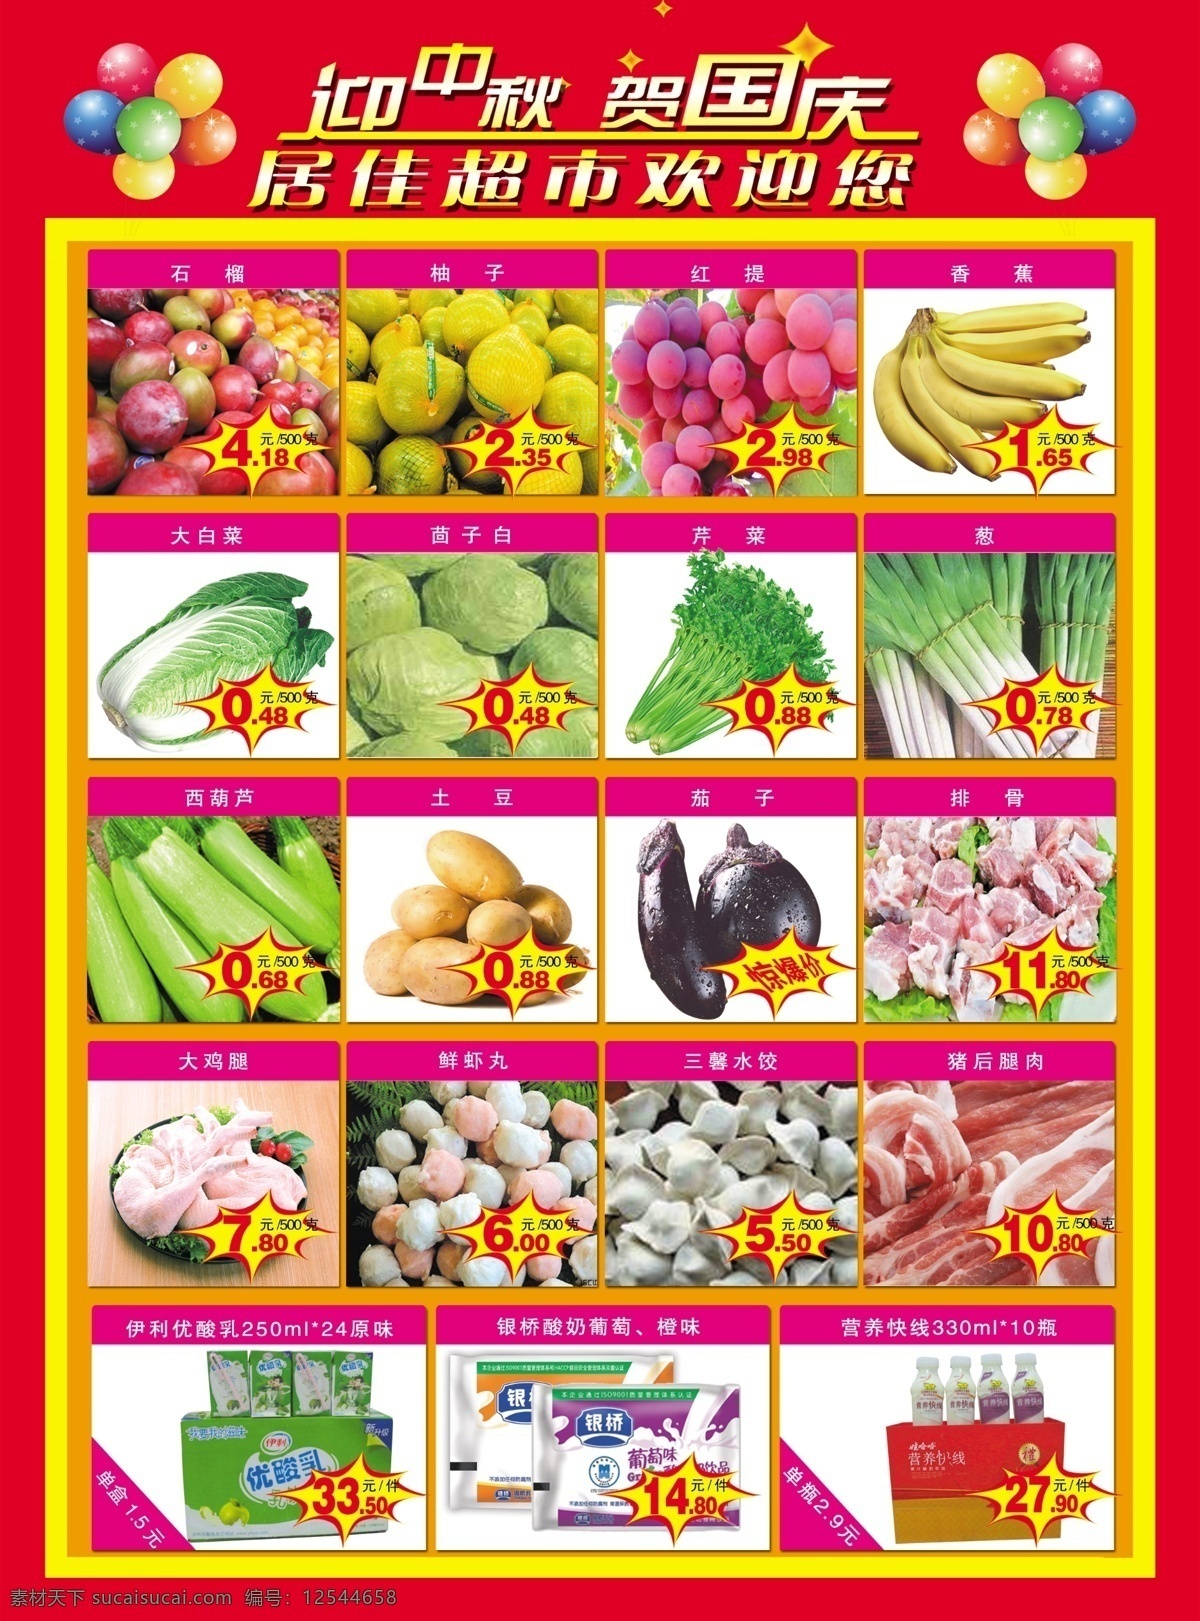 超市 活动 dm宣传单 超市活动 点缀 广告设计模板 气球 蔬菜 超市中秋 水果 装饰 源文件 psd源文件